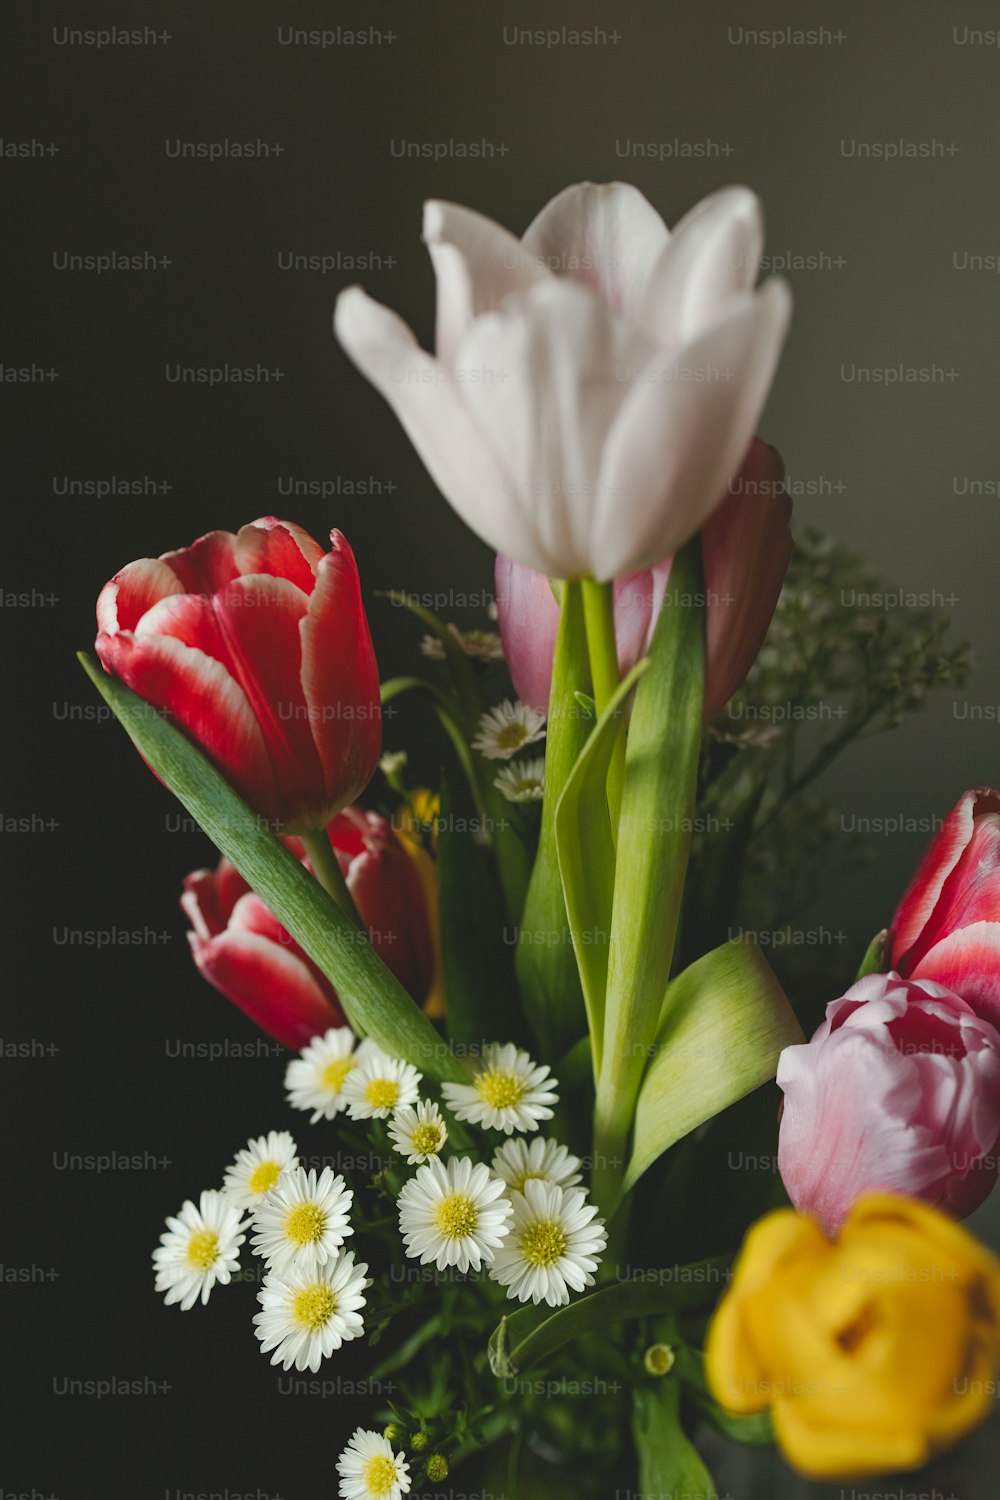 eine Vase gefüllt mit vielen verschiedenfarbigen Blumen